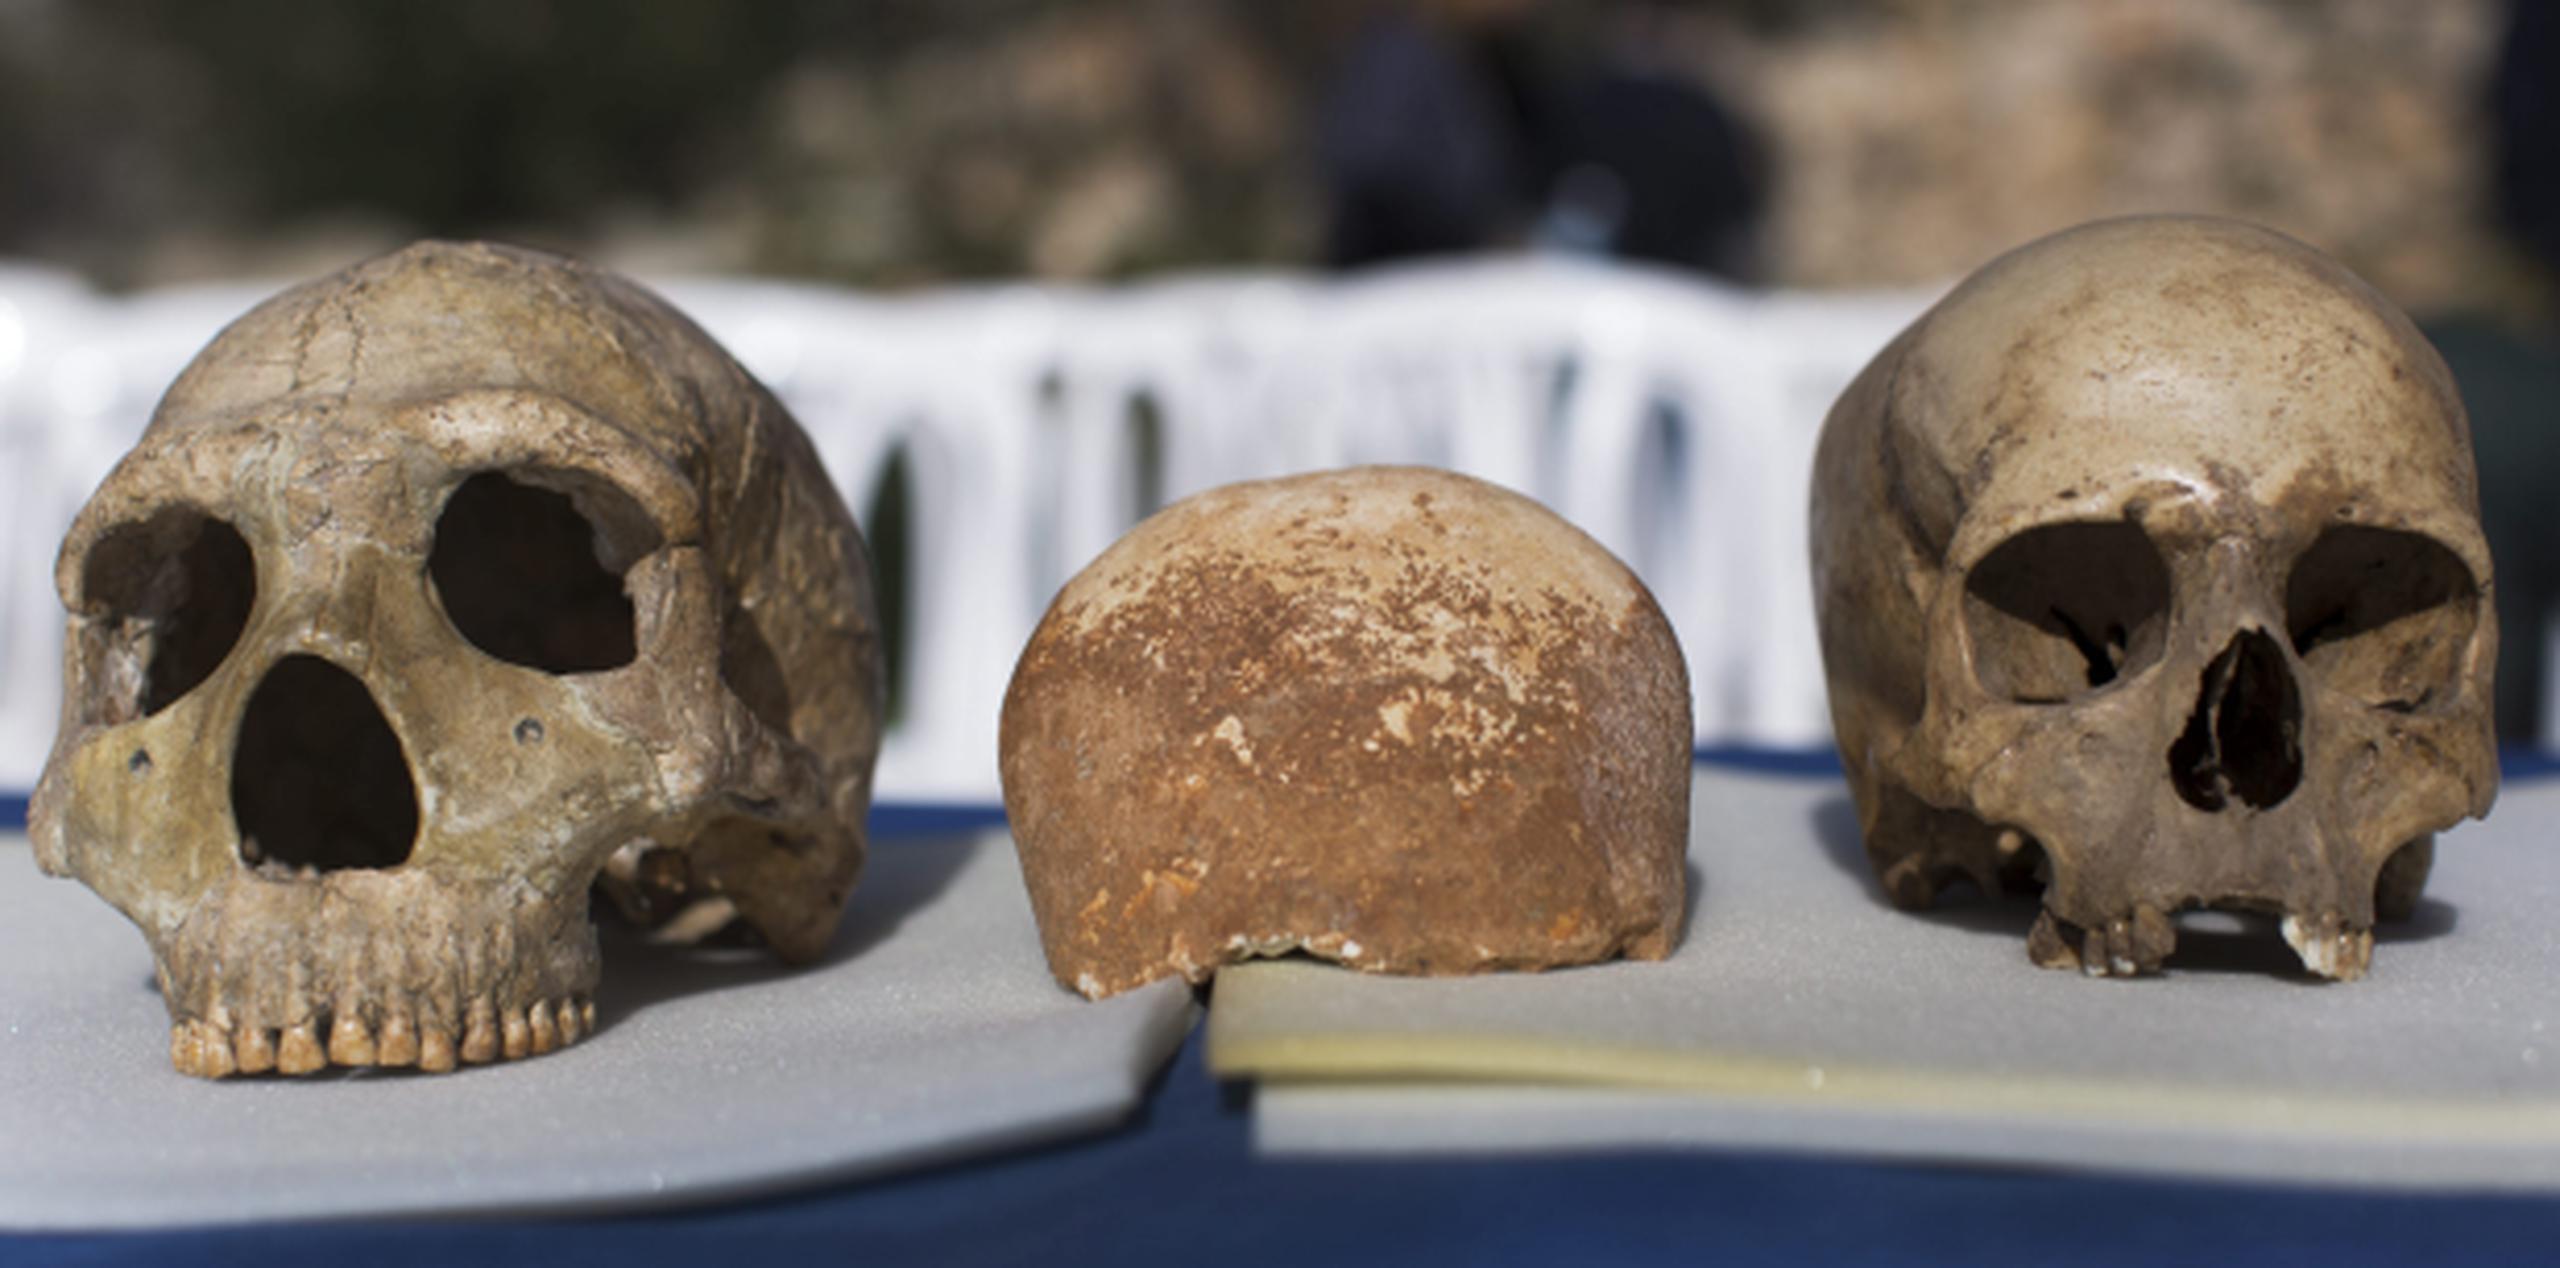 El cráneo central, que data de hace 55,000 años, sugiere que pudieron pasar por allí (Oriente Medio) los primeros Homo Sapiens que más tarde colonizaron Europa. (EFE)